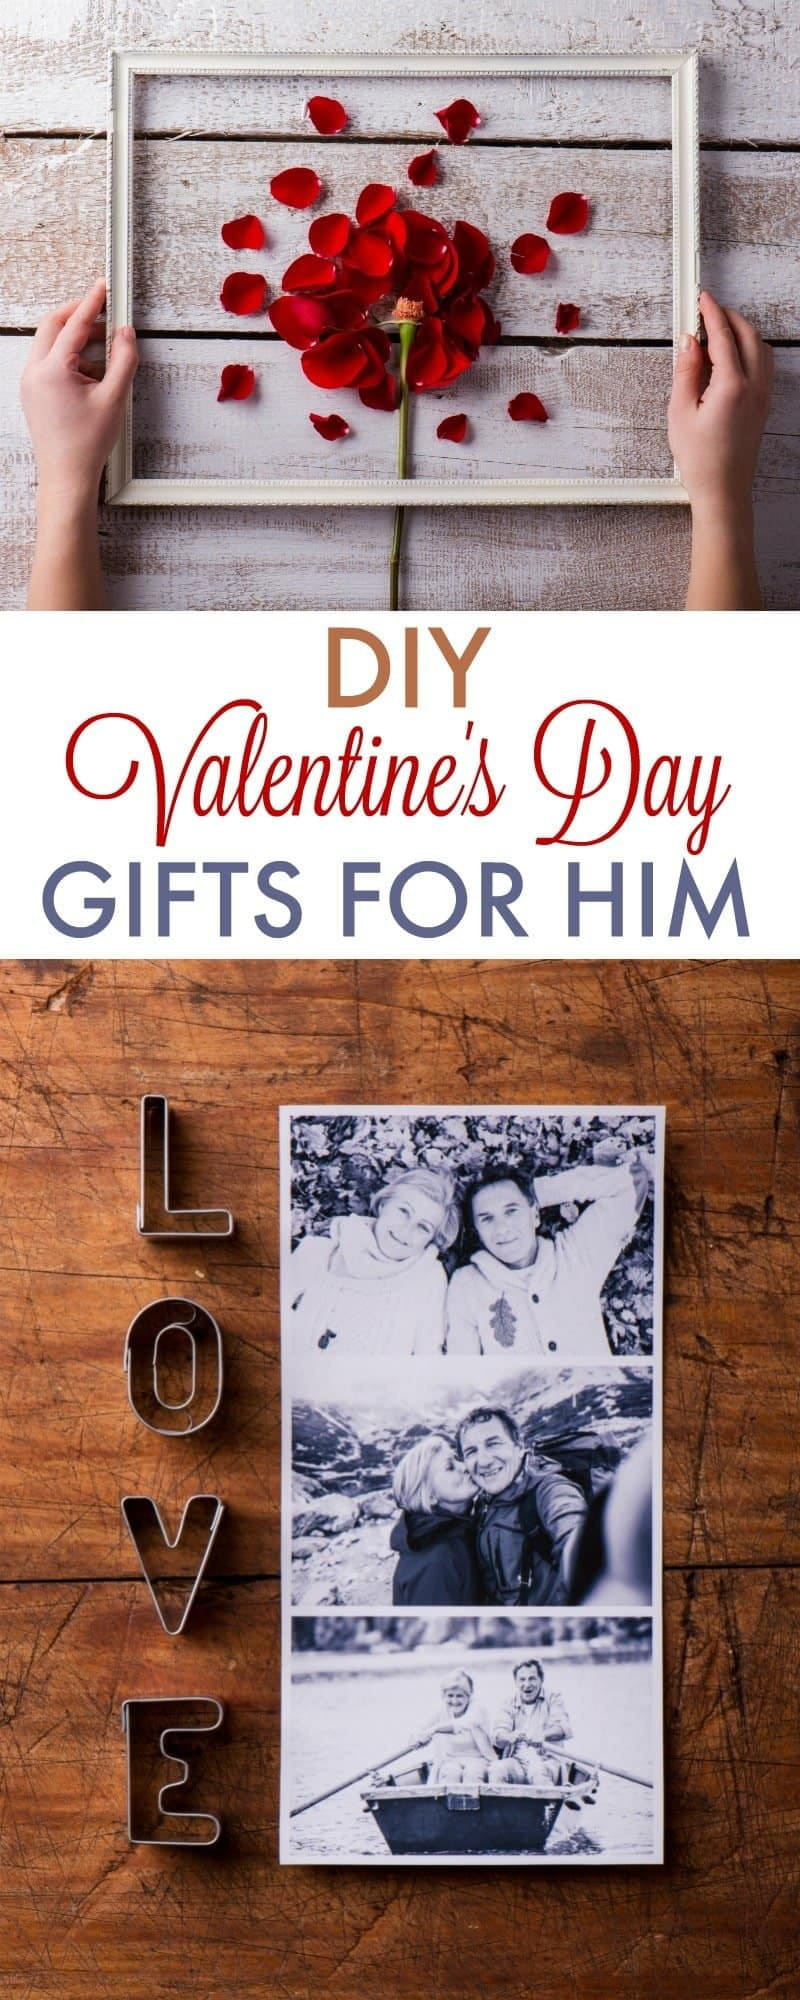 Cute Gift Ideas For Boyfriend
 Top 25 Cute Sentimental Gift Ideas for Boyfriend – Home